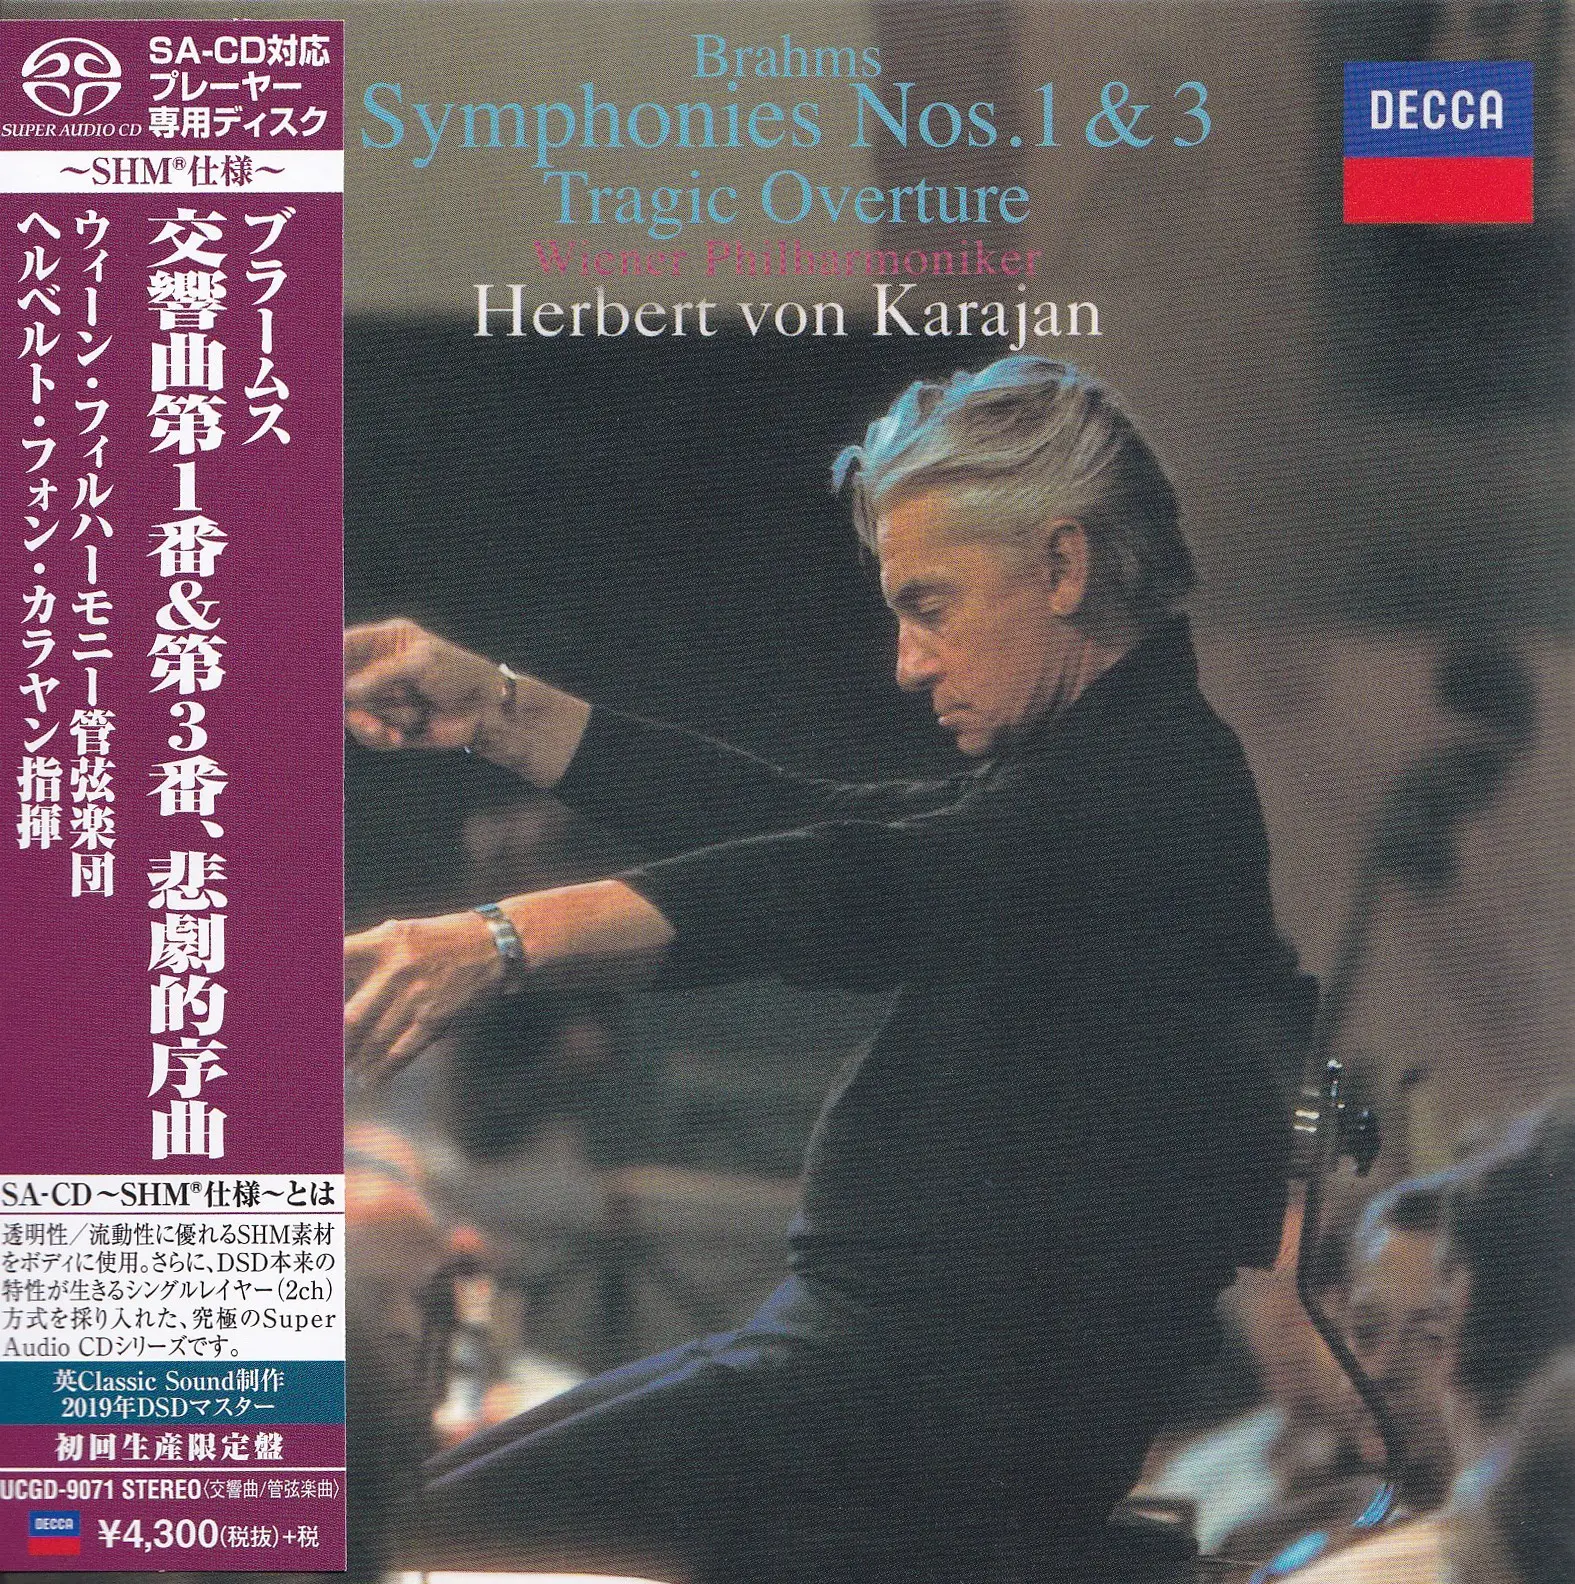 Herbert von Karajan, Wiener Philharmoniker - Brahms: Symphonies 1 & 3; Tragic Overture (1960 & 1962) [Japan 2019] SACD ISO + DSF DSD64 + Hi-Res FLAC